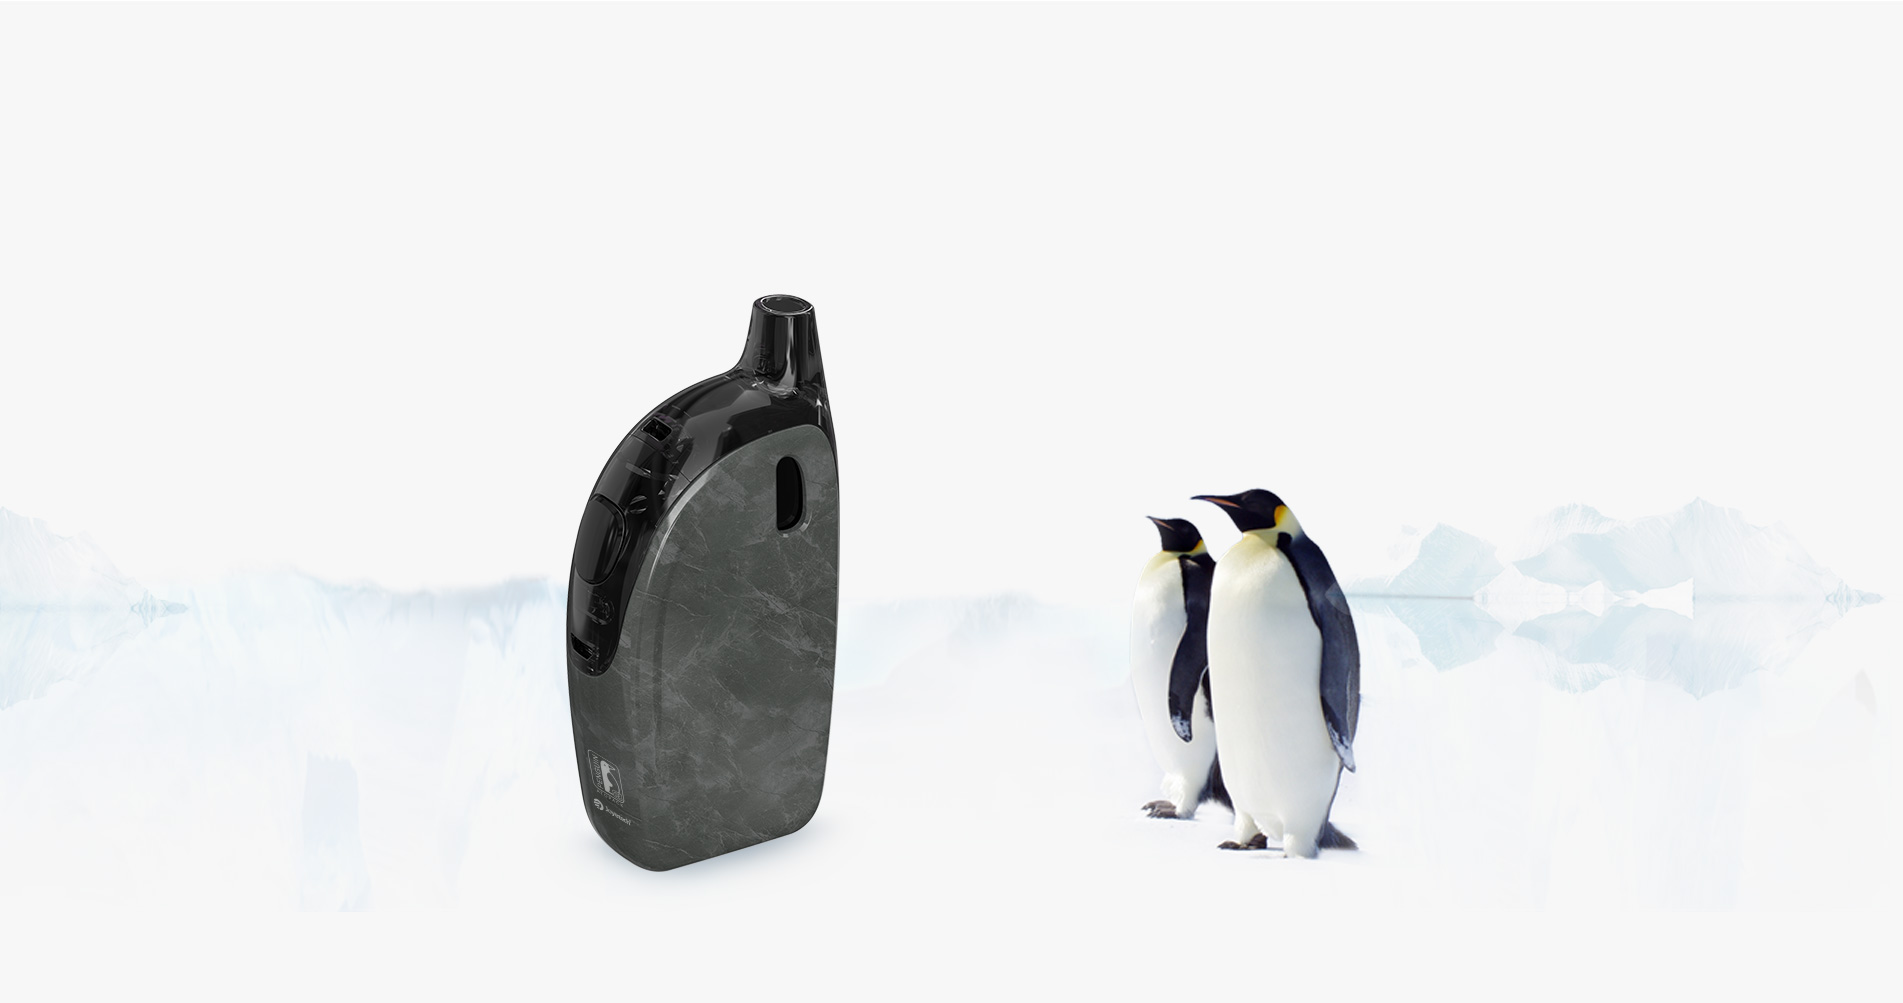 joyetech penguin se kit